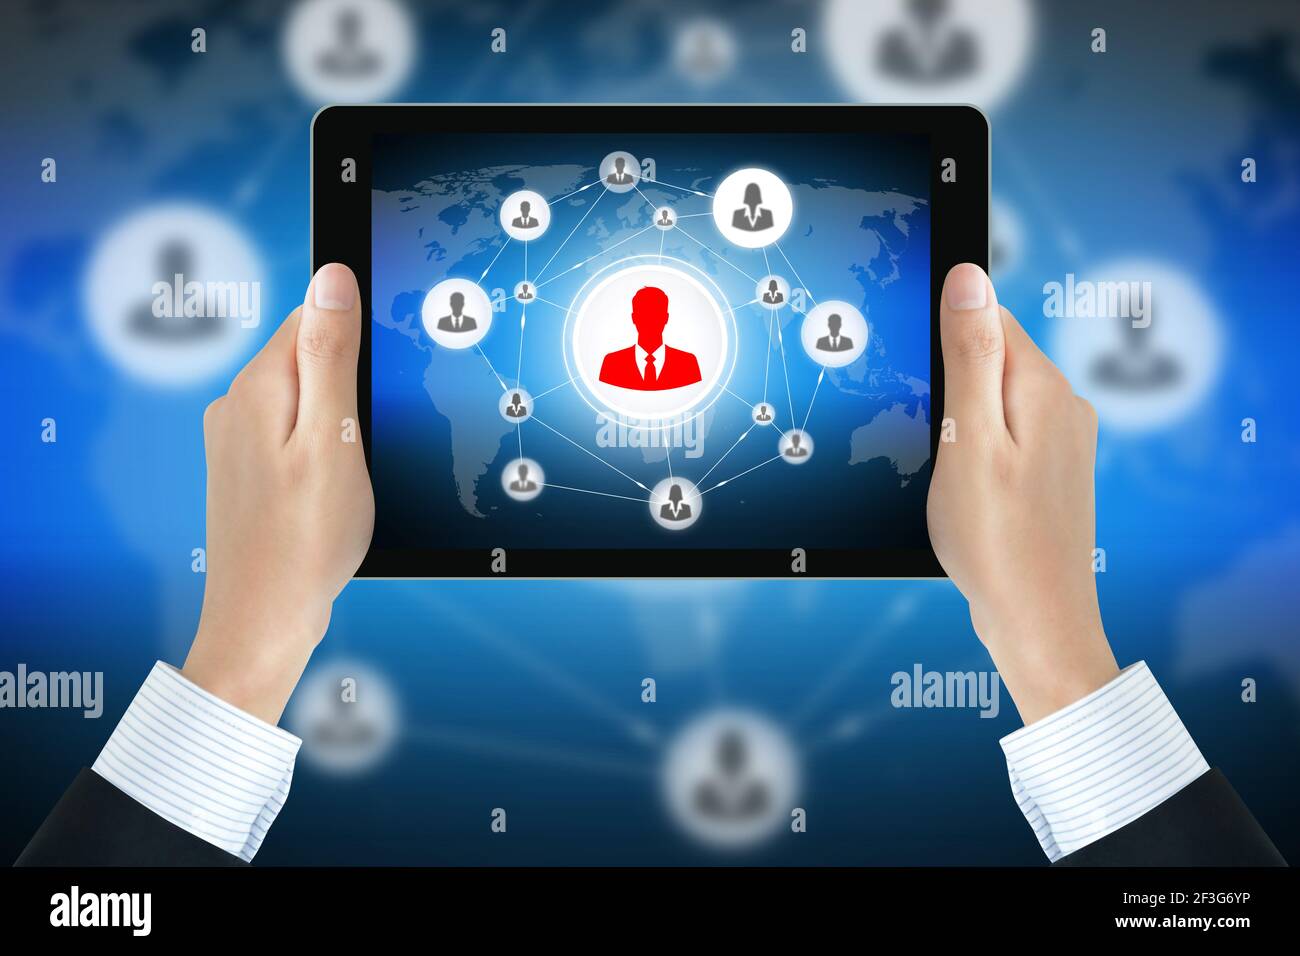 Businessman tiene las manos sosteniendo el tablet pc con los iconos de los empresarios vinculados como red en la pantalla - red social y de negocios en línea conceptos Foto de stock